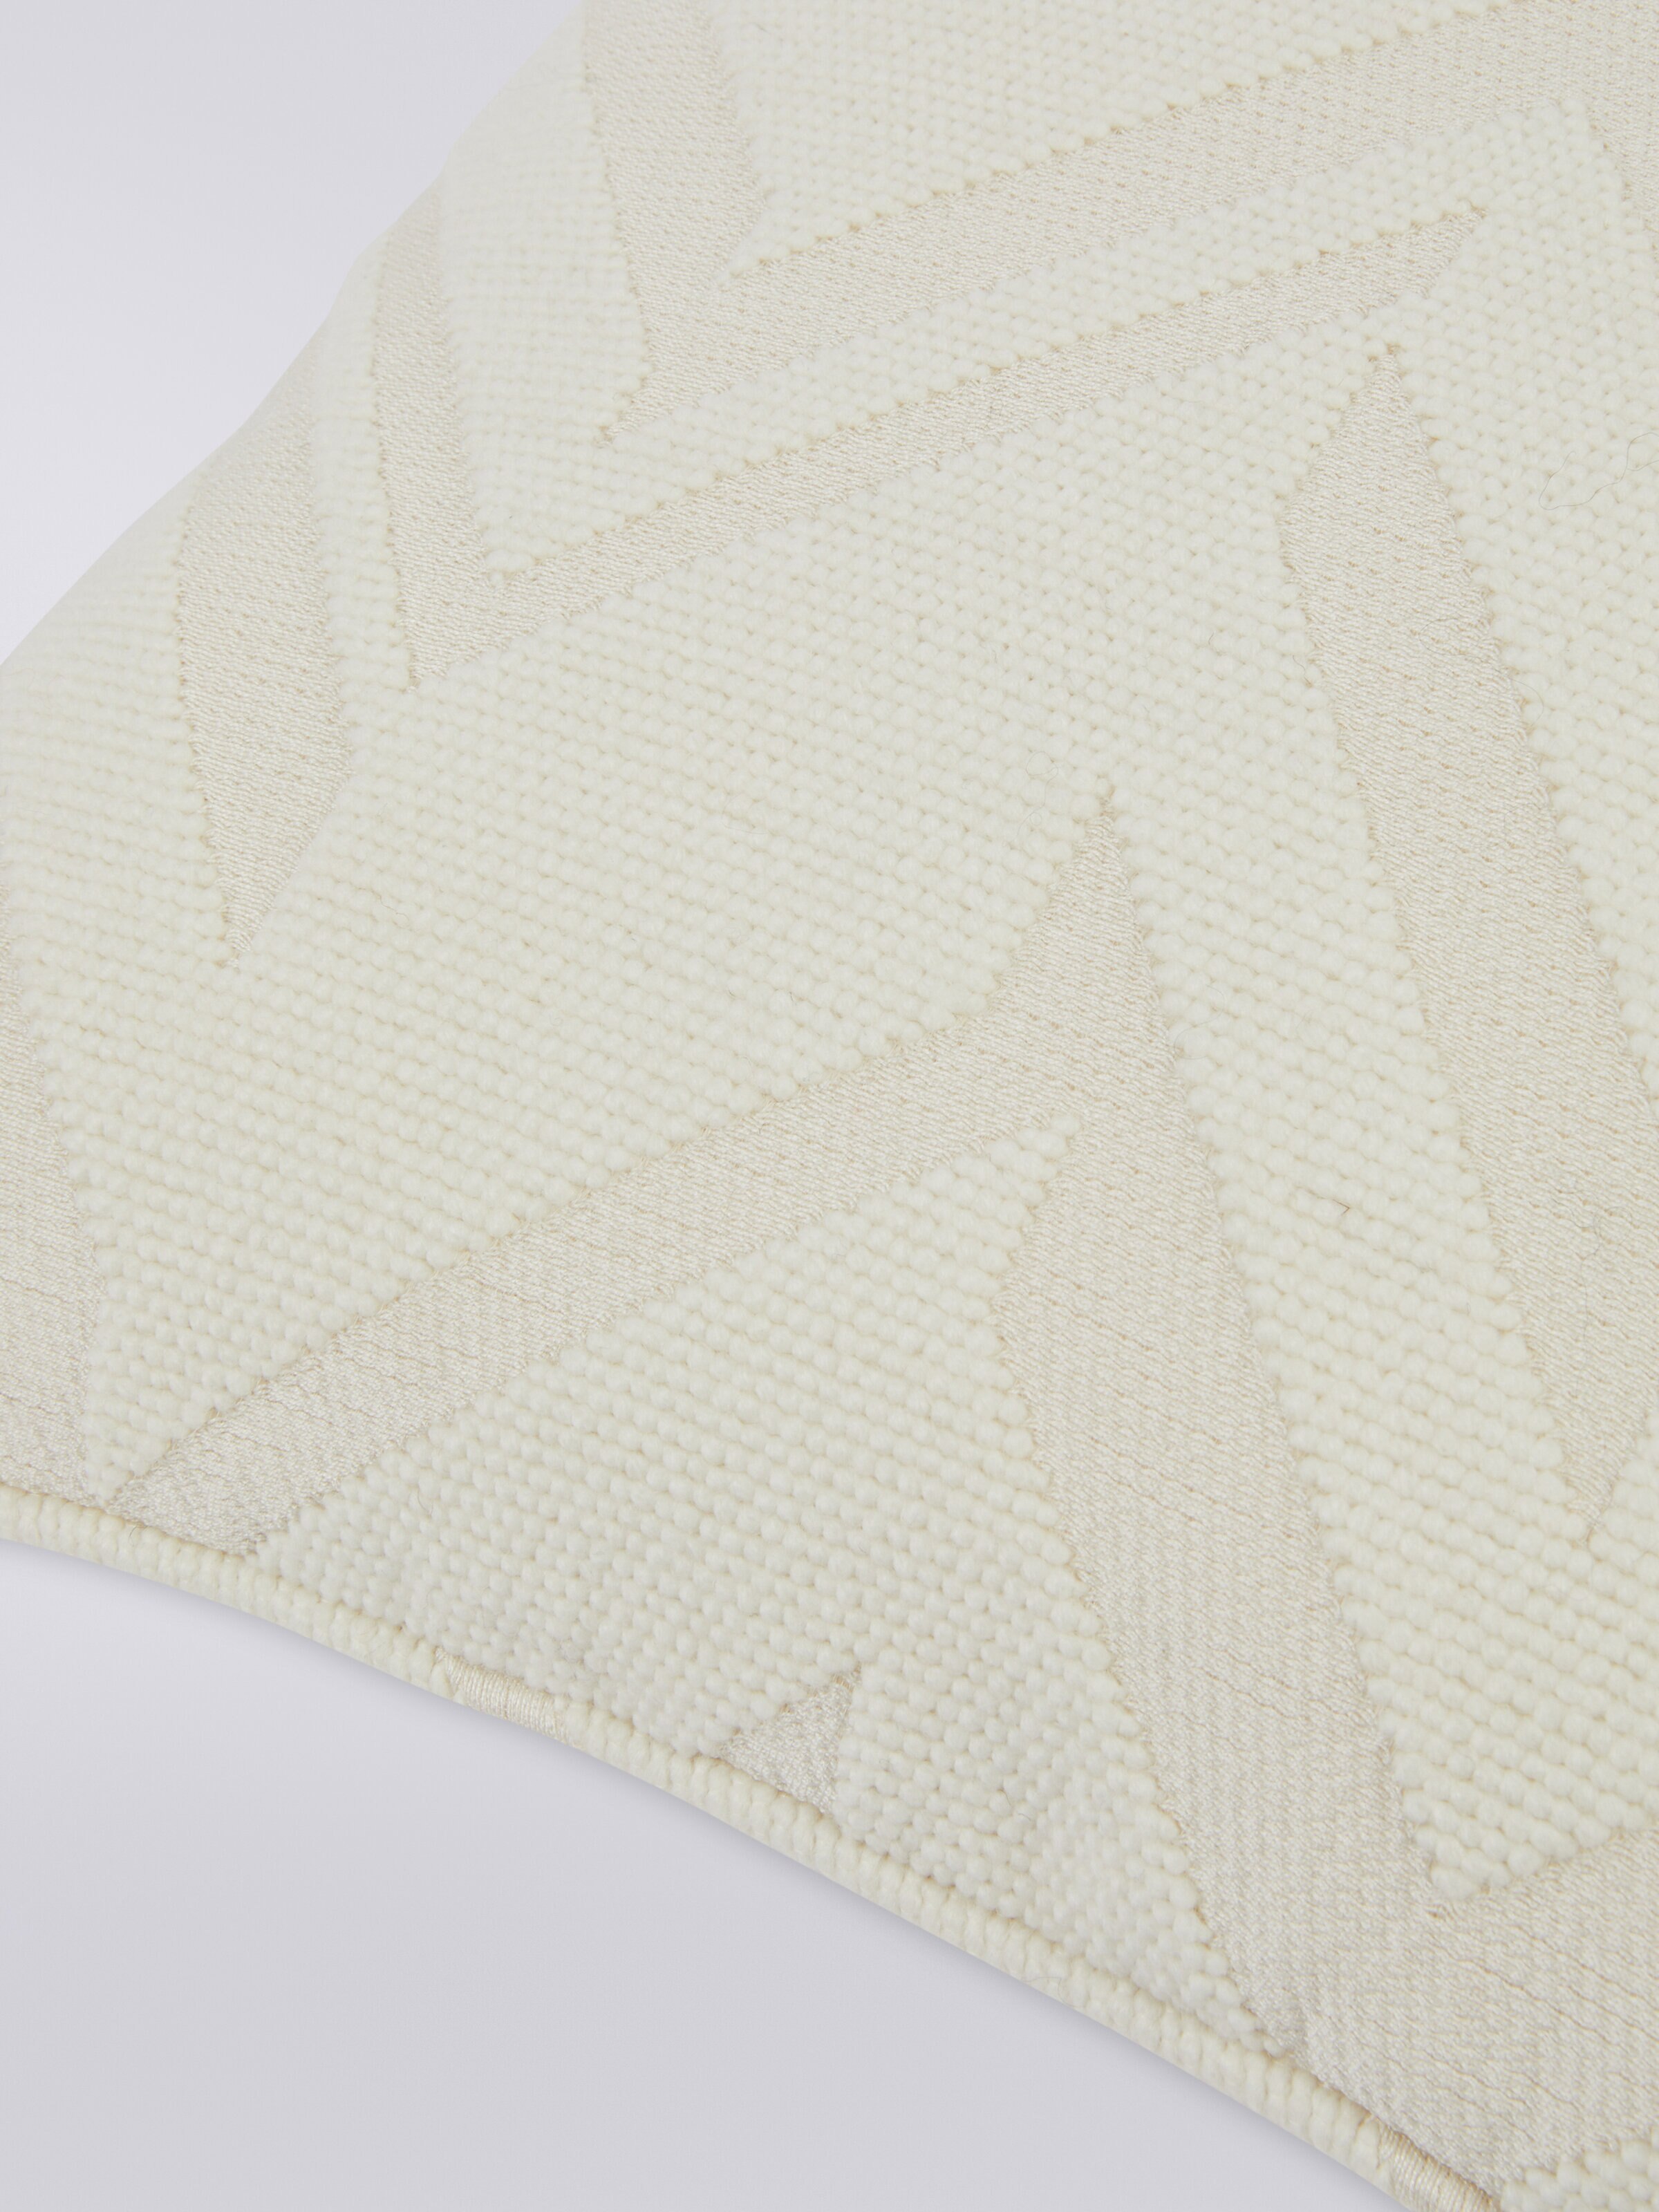 Orme クッション 40x40cm 3Dエフェクトジャカード織り, ホワイト  - 2